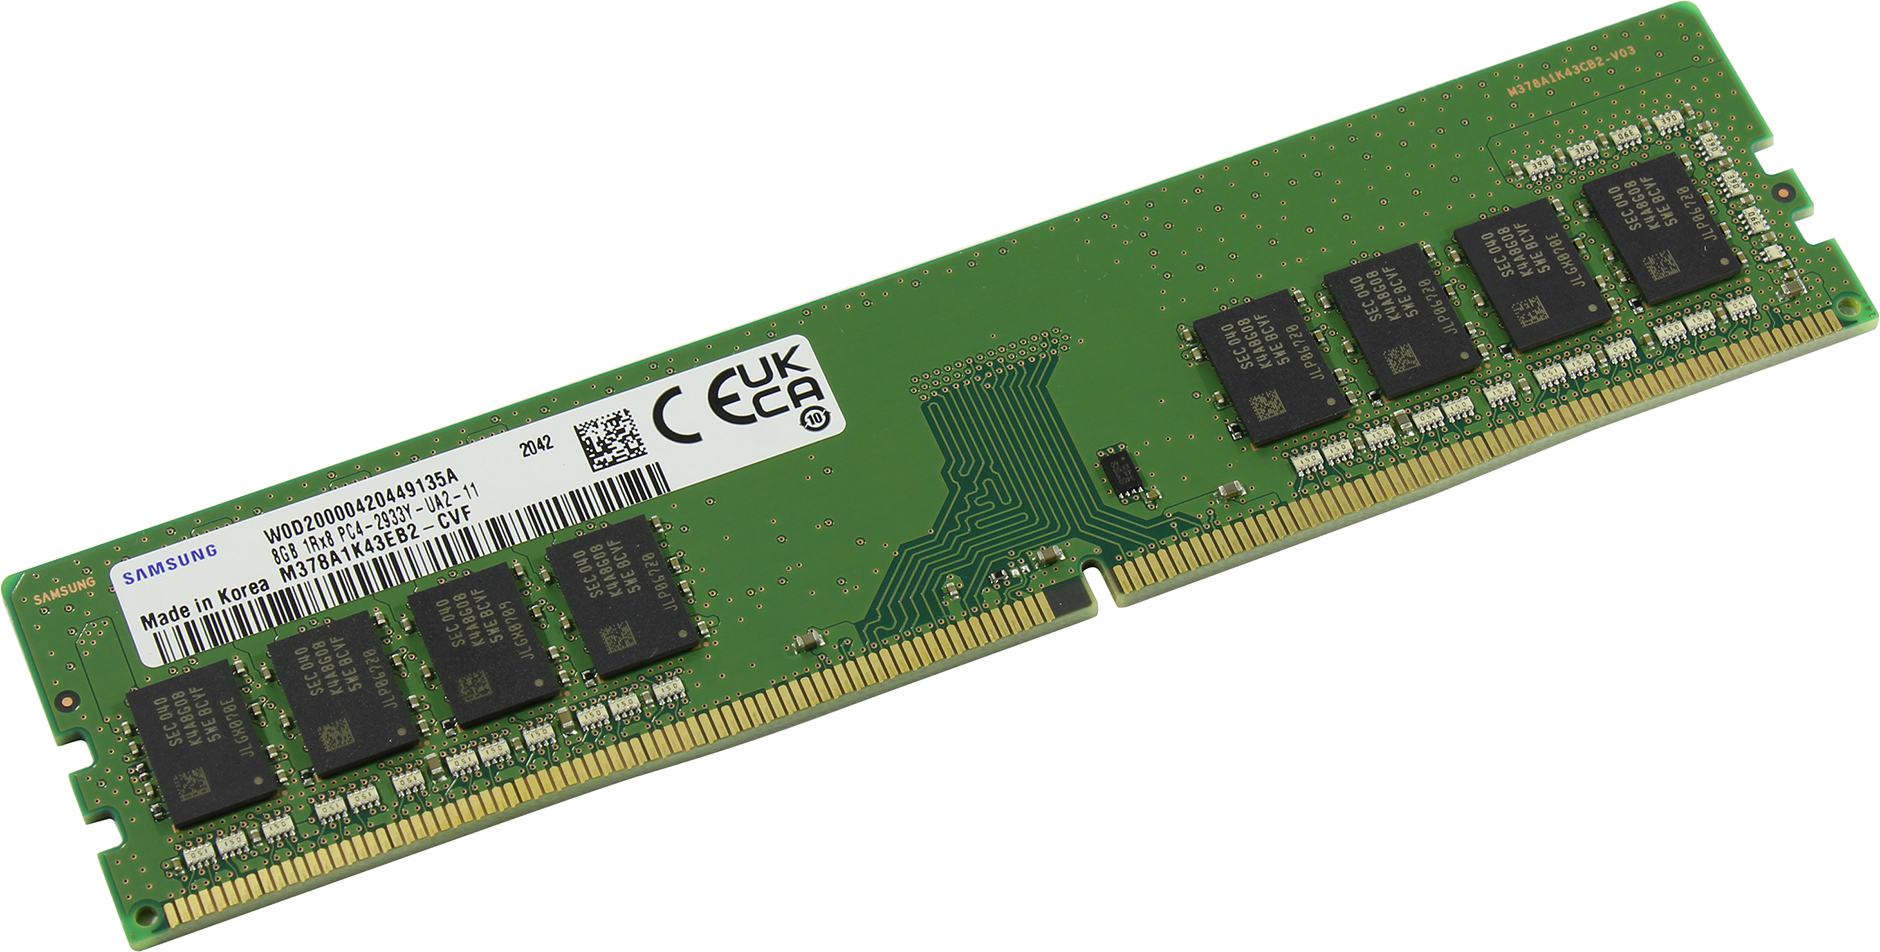 Память DDR4 8Gb PC4-23400, 2933MHz Samsung (SEC)  (M378A1K43EB2-CVF)